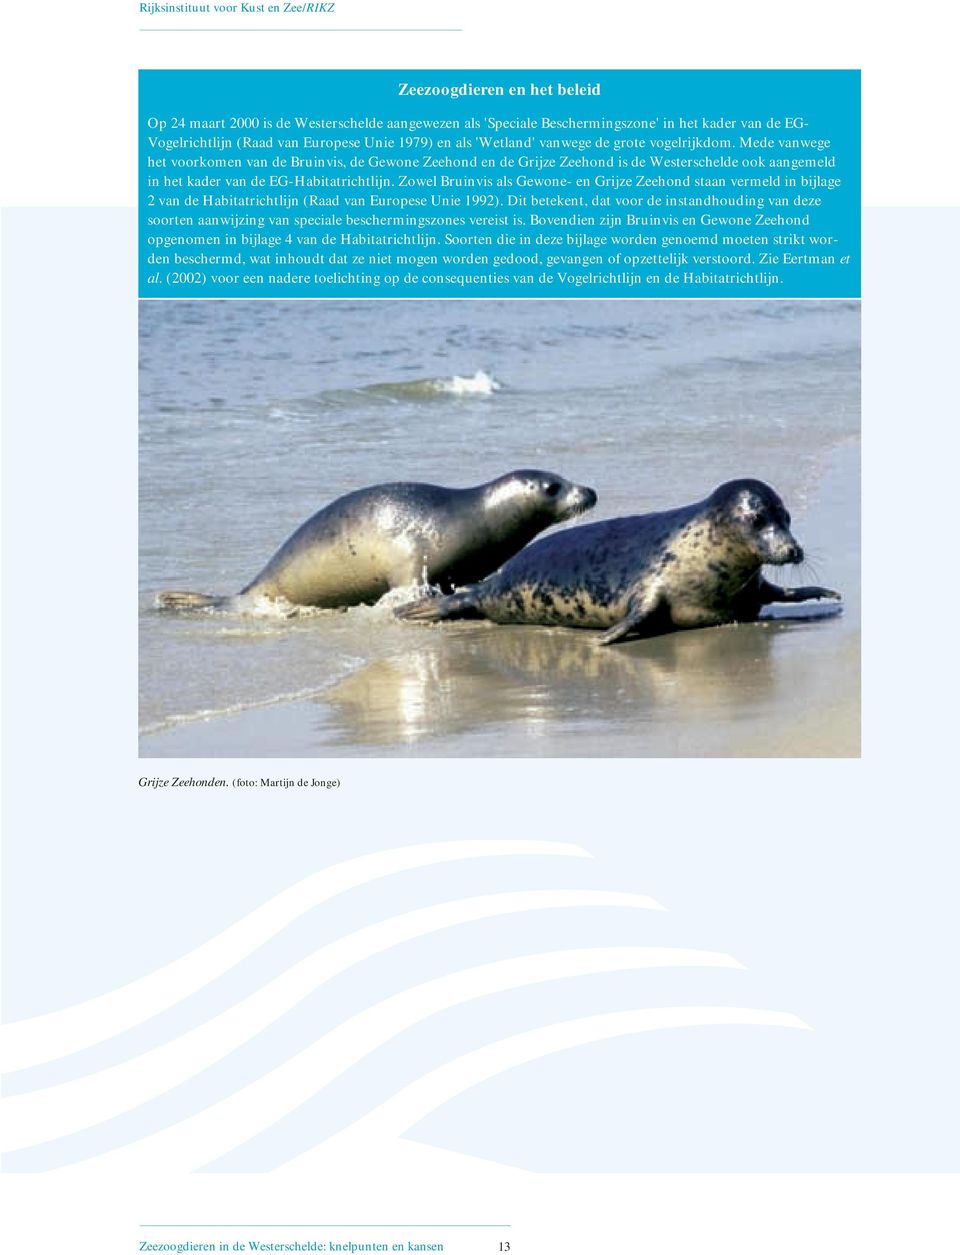 Zowel Bruinvis als Gewone- en Grijze Zeehond staan vermeld in bijlage 2 van de Habitatrichtlijn (Raad van Europese Unie 1992).